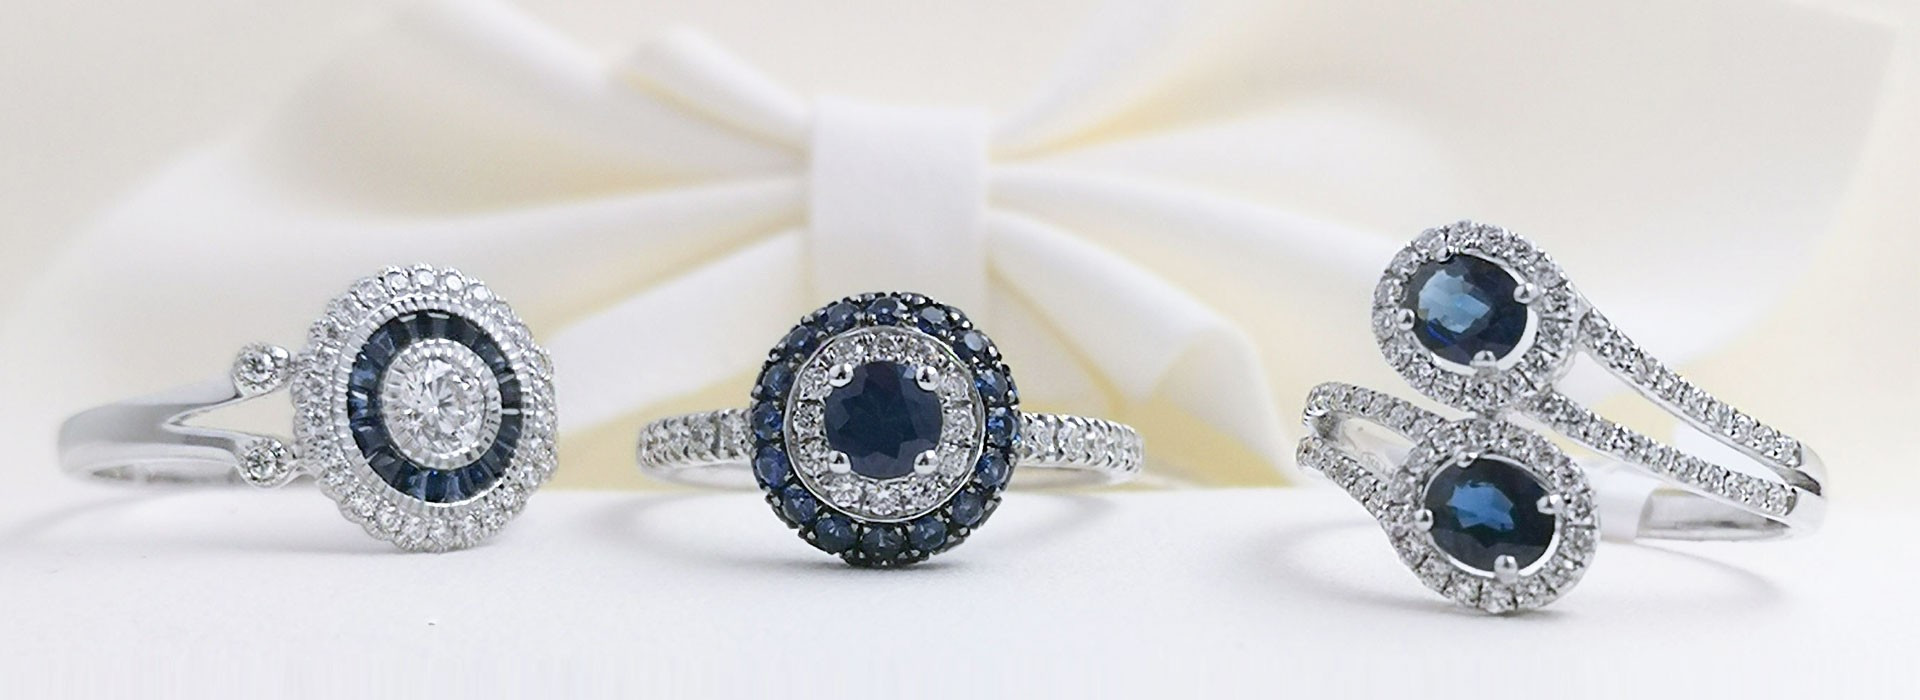 Descubre joyas de zafiros azules ideales para lucir en cada ocasión. Anillos, pendientes, pulseras de oro 18k con zafiros 